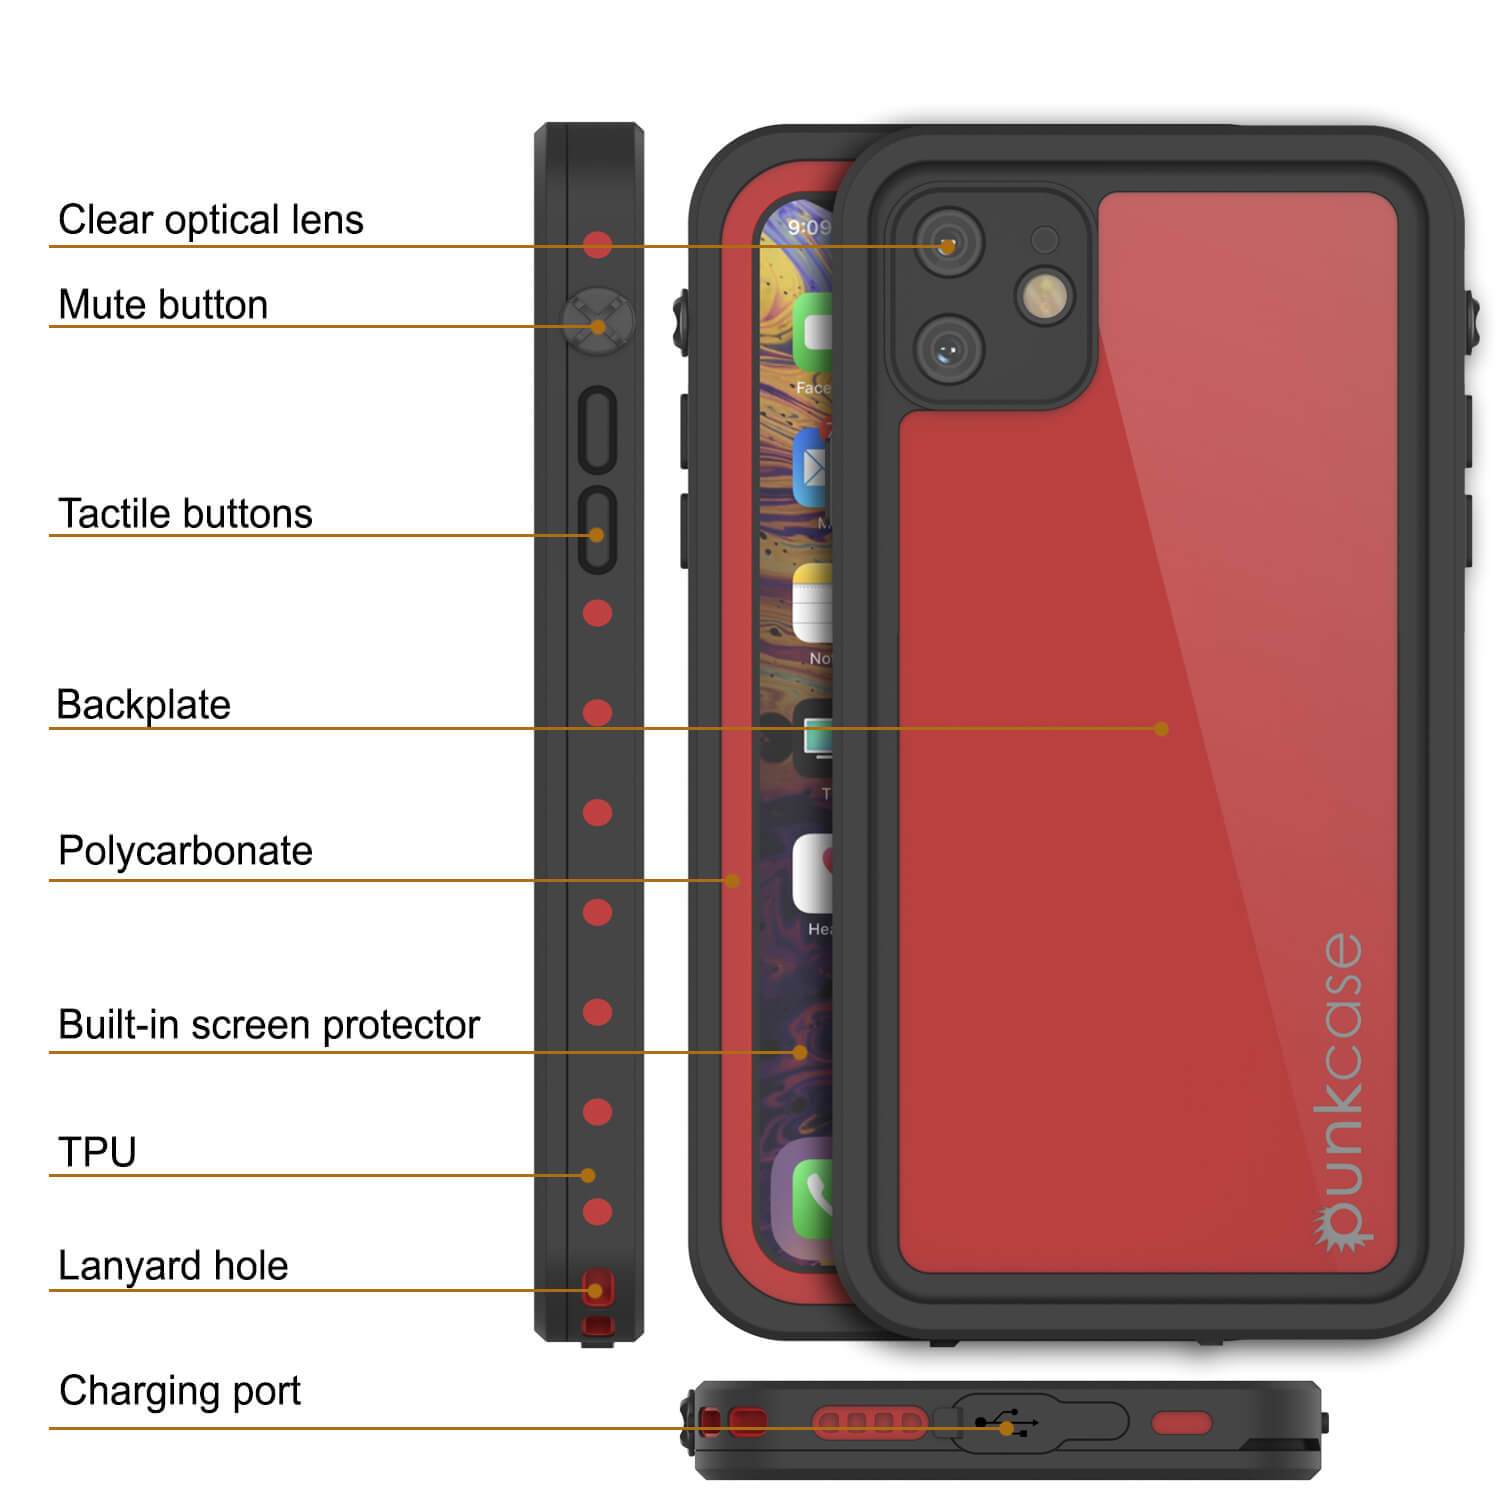 iPhone 11 Waterproof IP68 Case, Punkcase [Red] [StudStar Series] [Slim Fit]